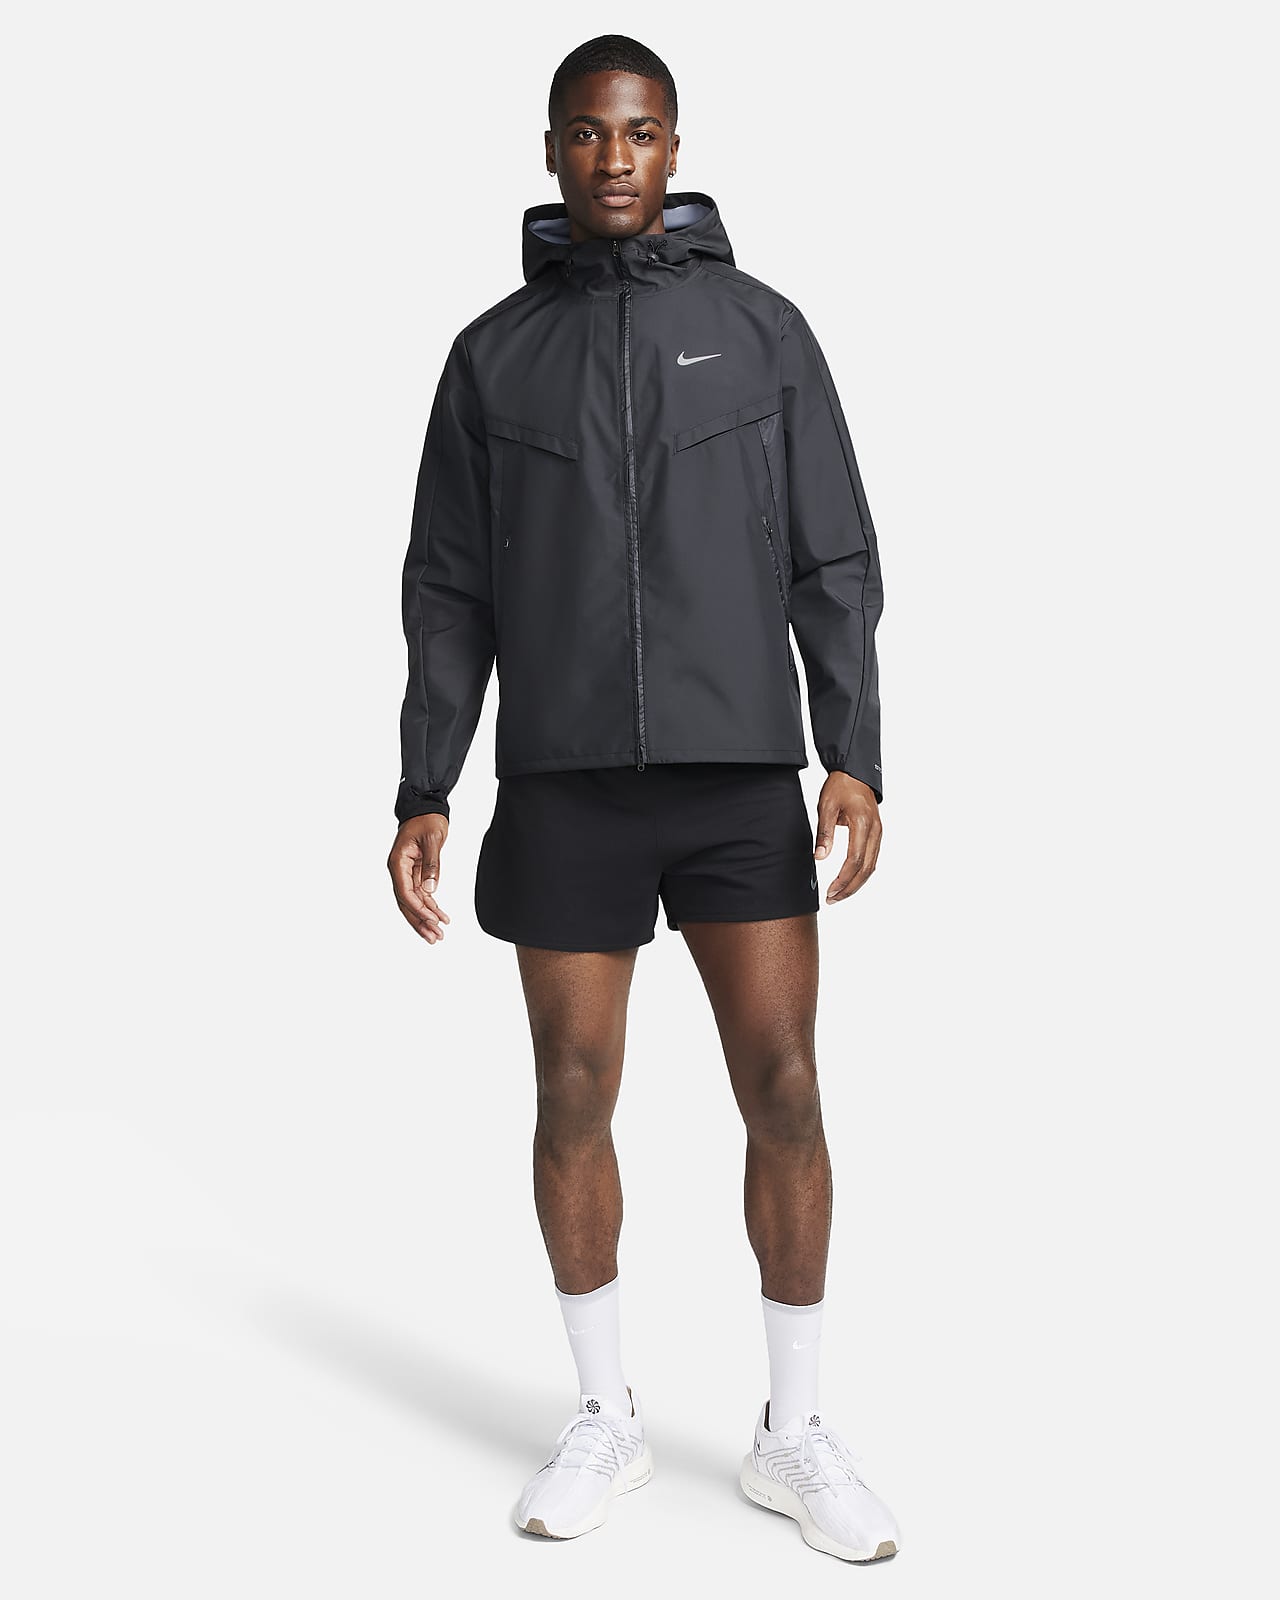 Veste sportswear windrunner kaki noir homme - Nike